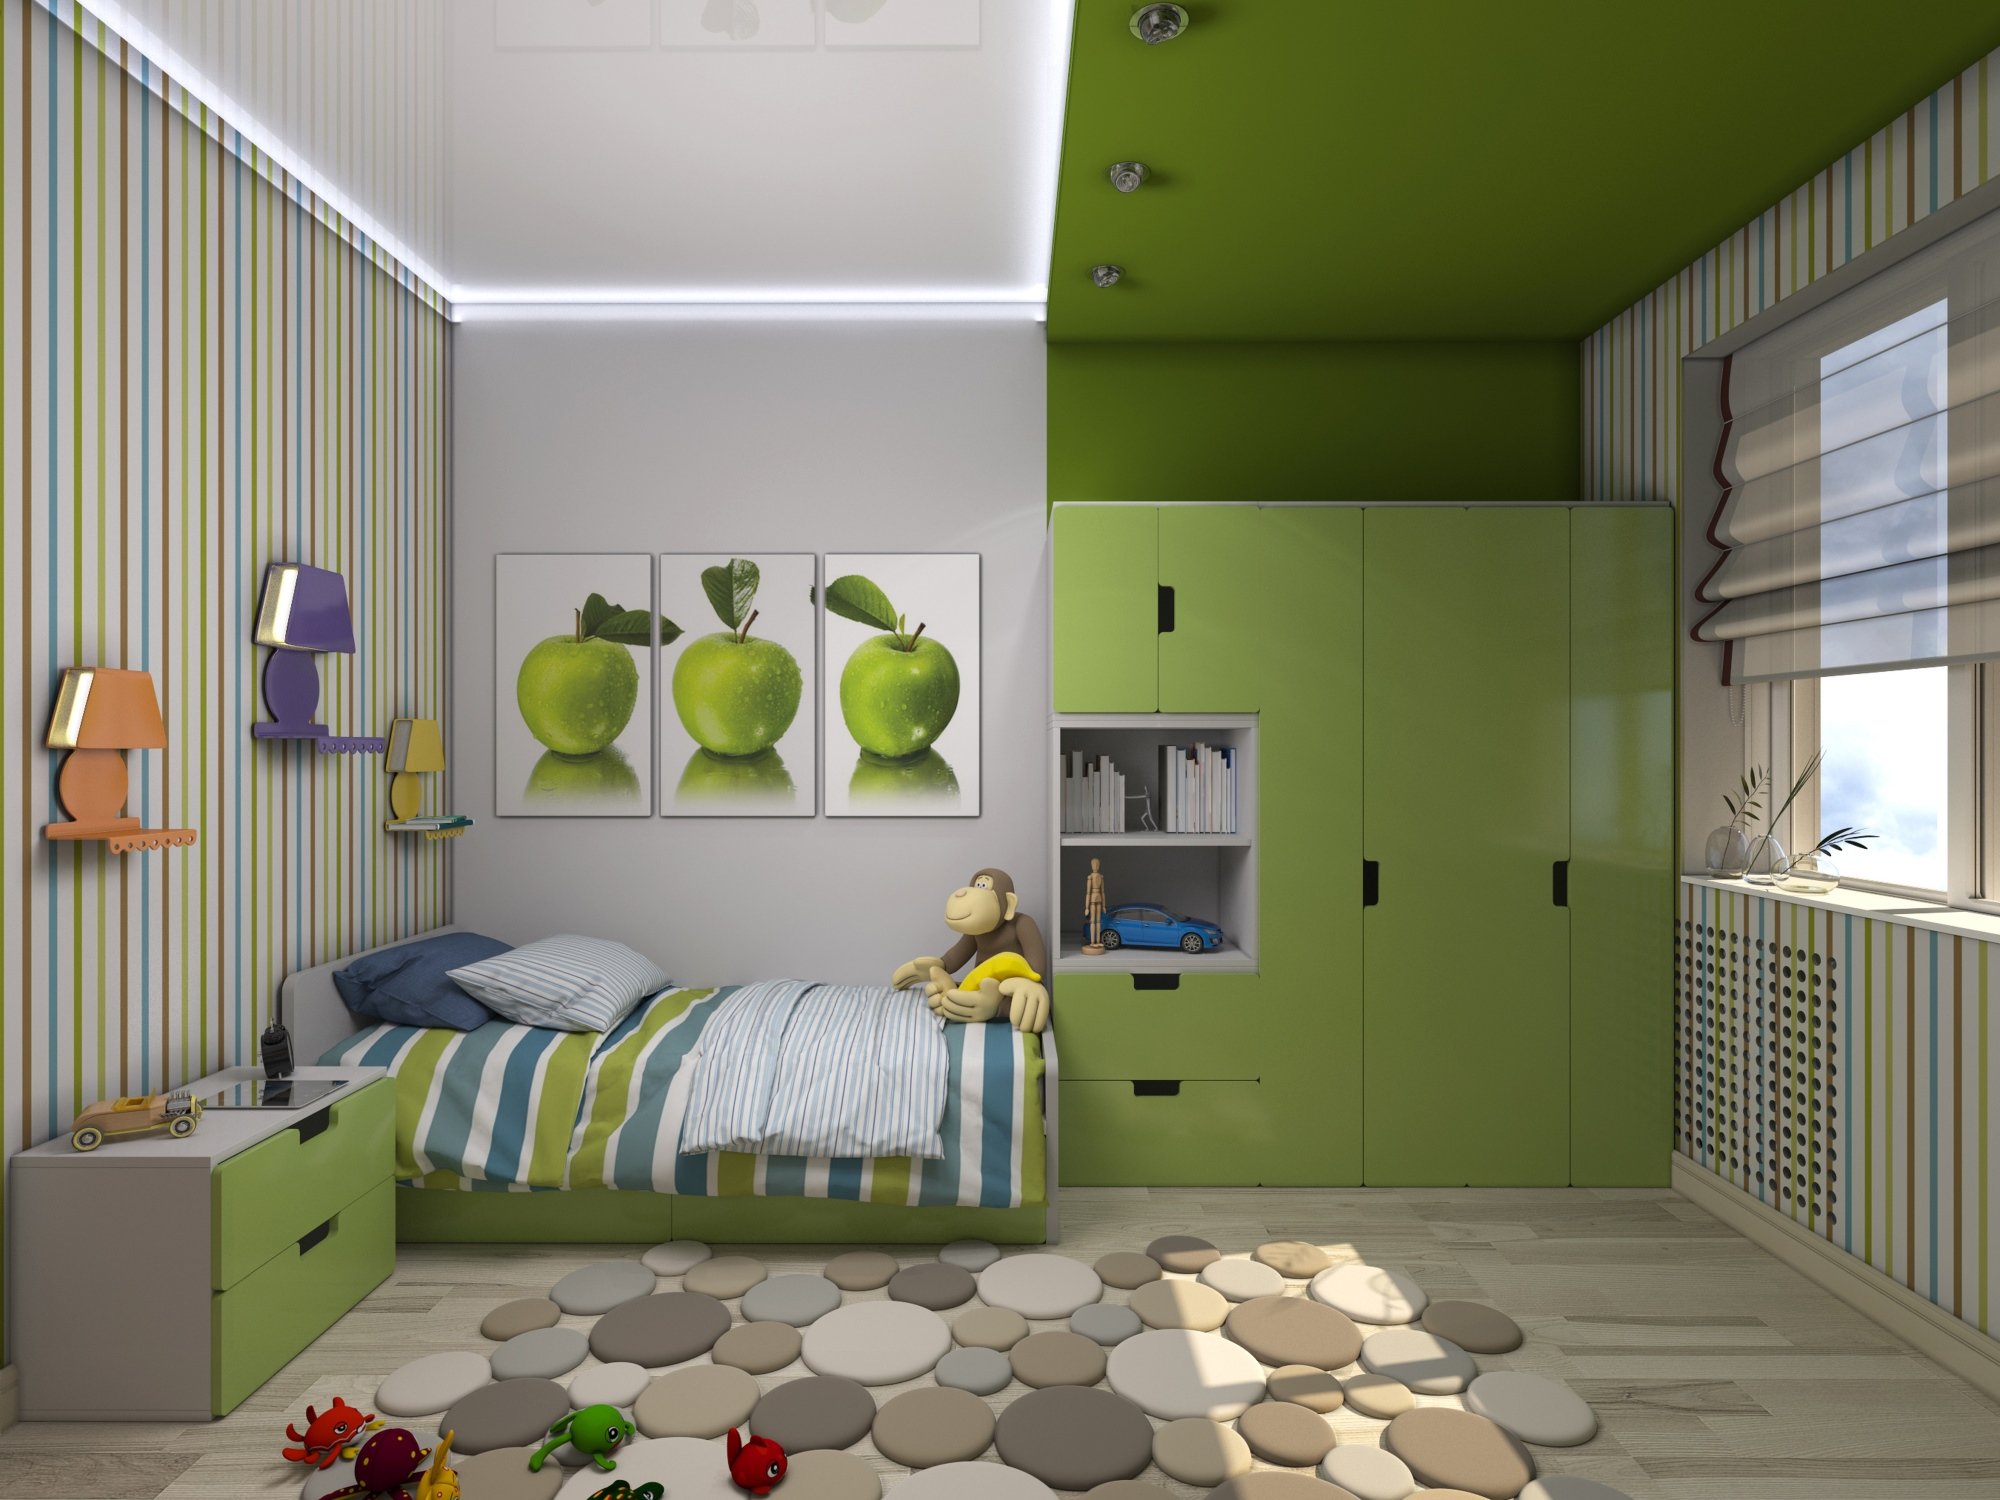 Принципы оформления детской комнаты в зеленых тонах